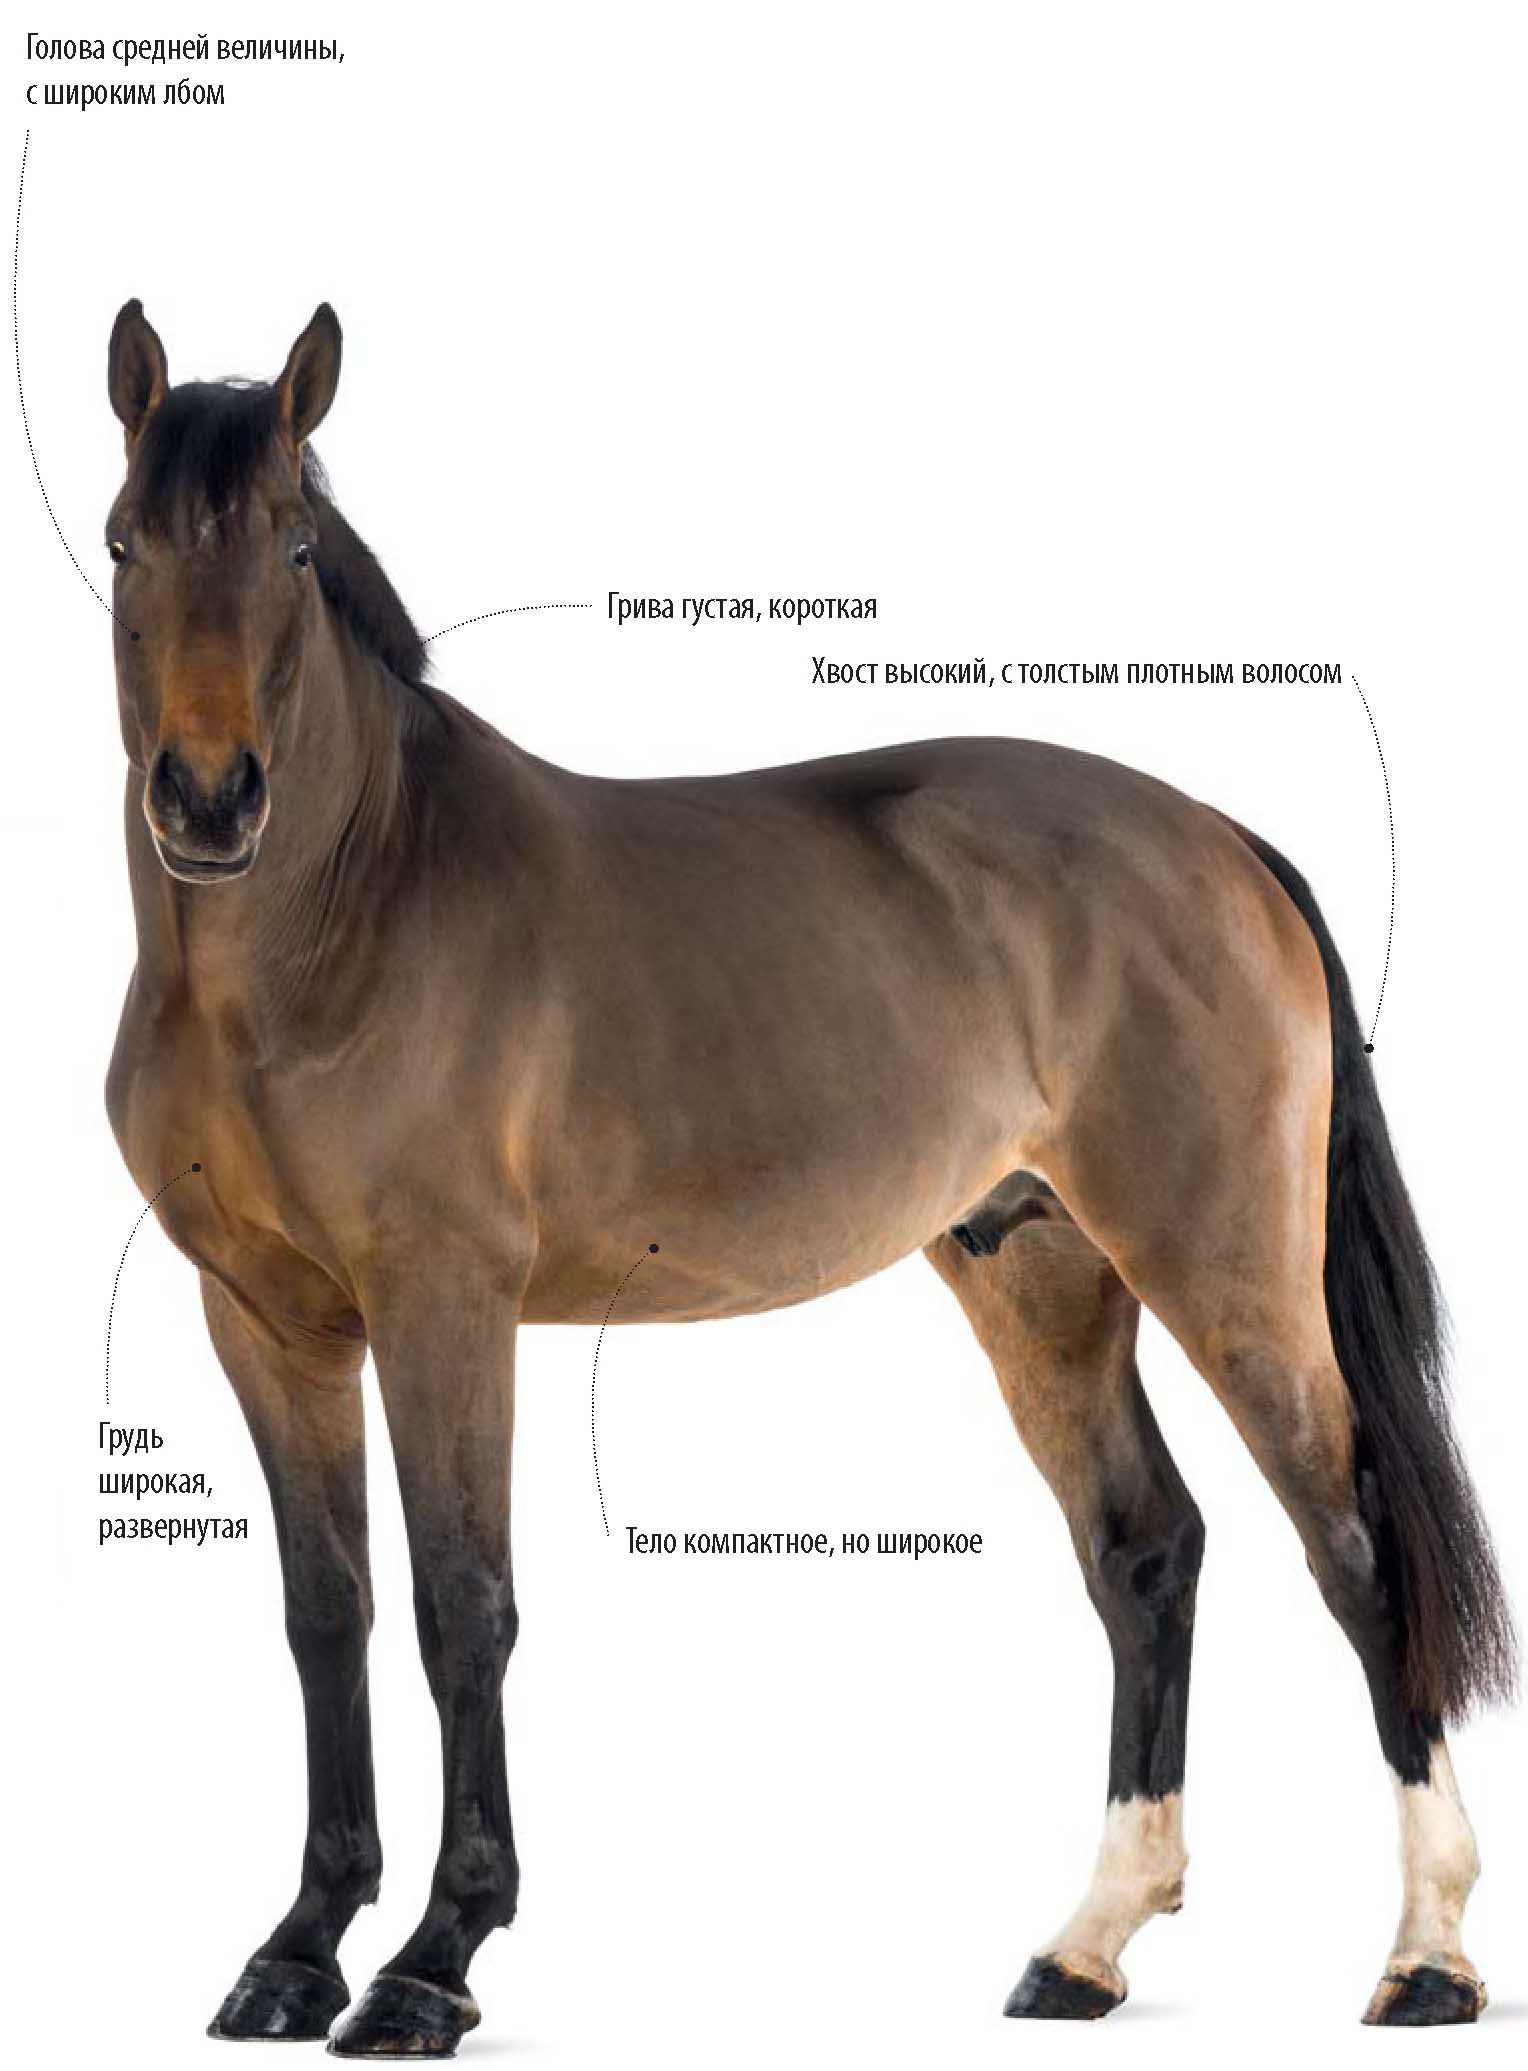 Бельгийская теплокровная порода лошади.
